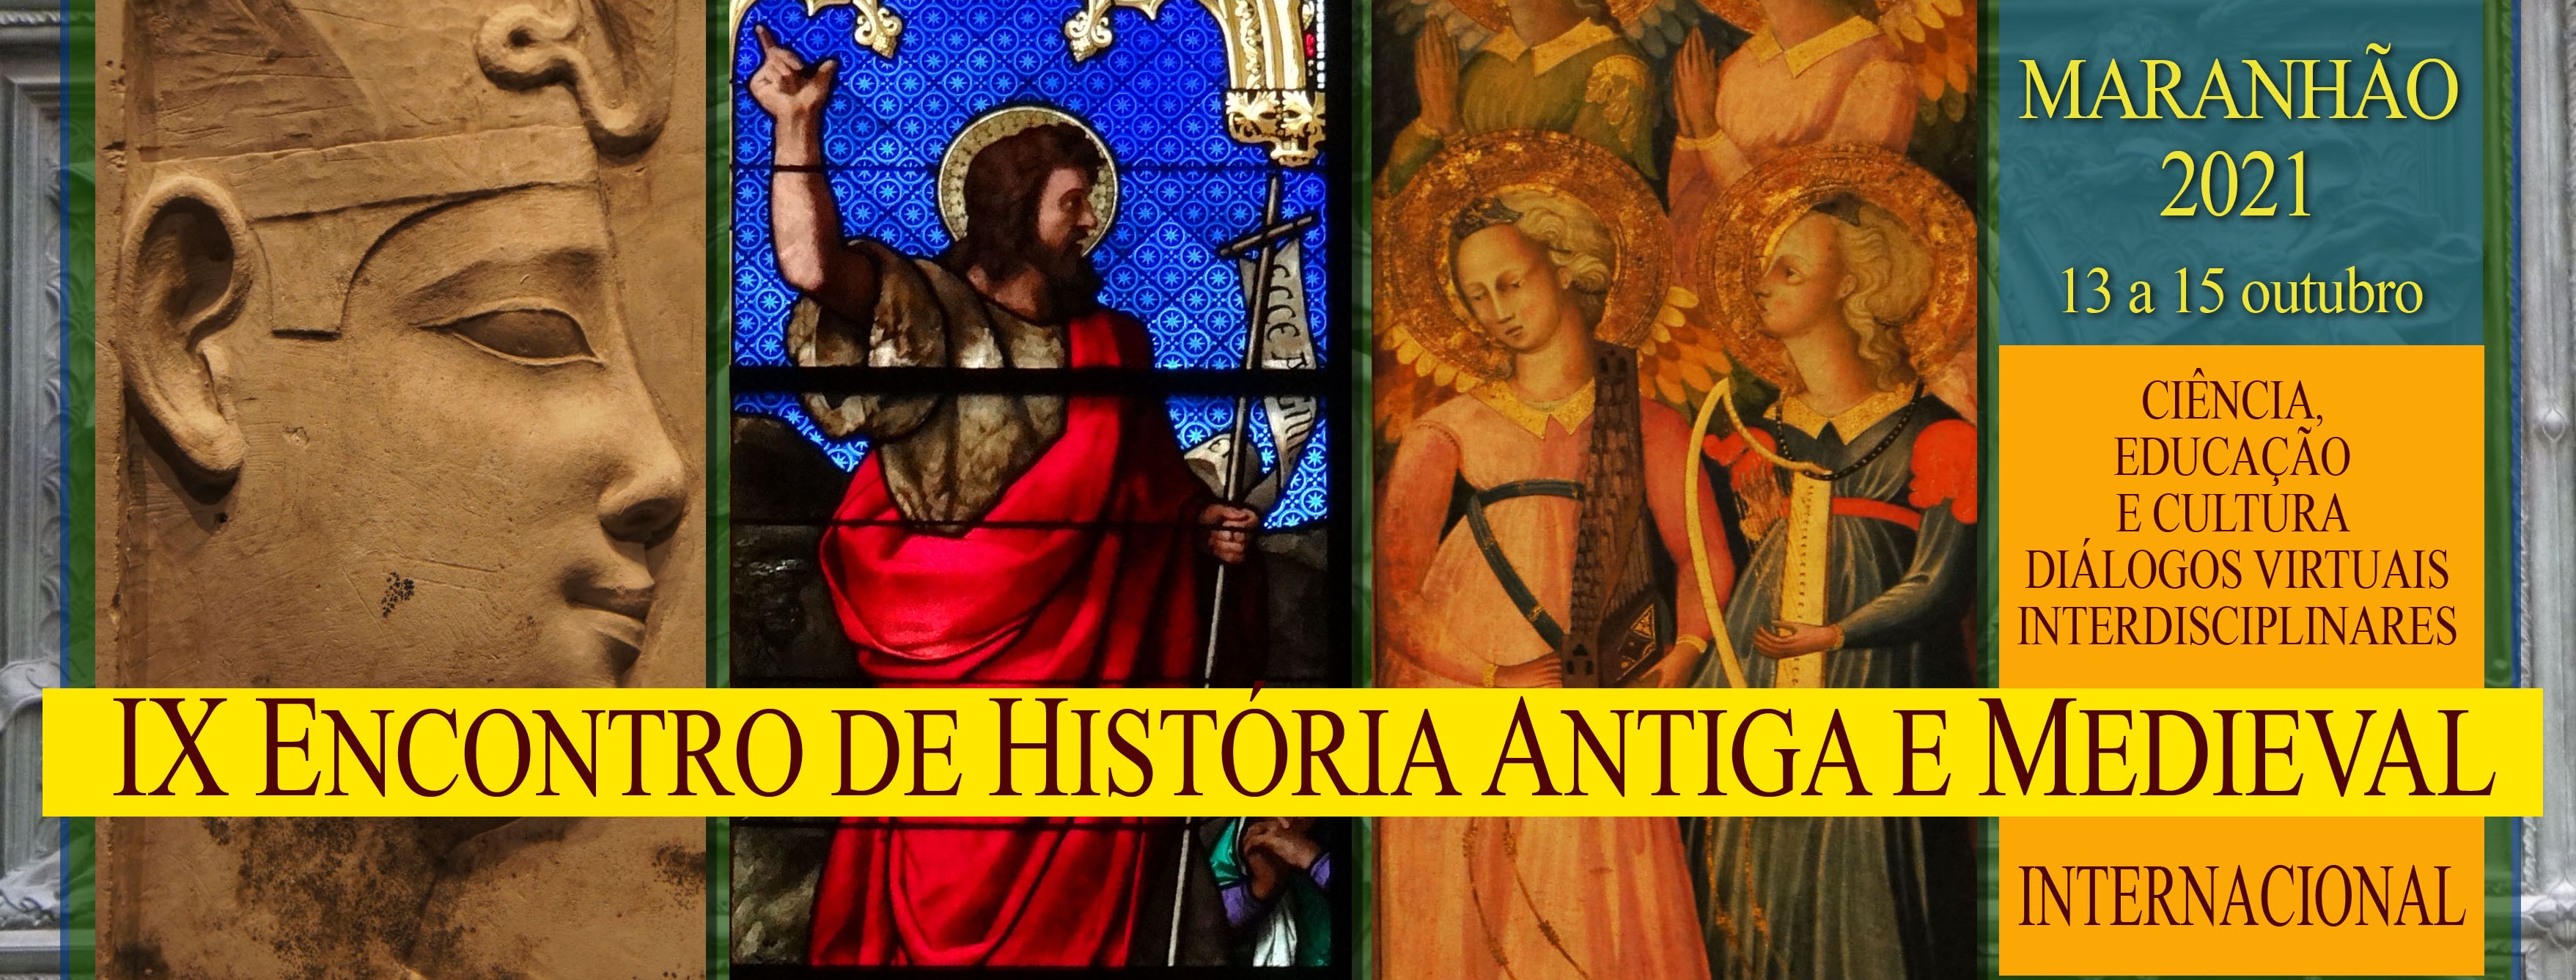 IX Encontro Internacional de História Antiga e Medieval do Maranhão